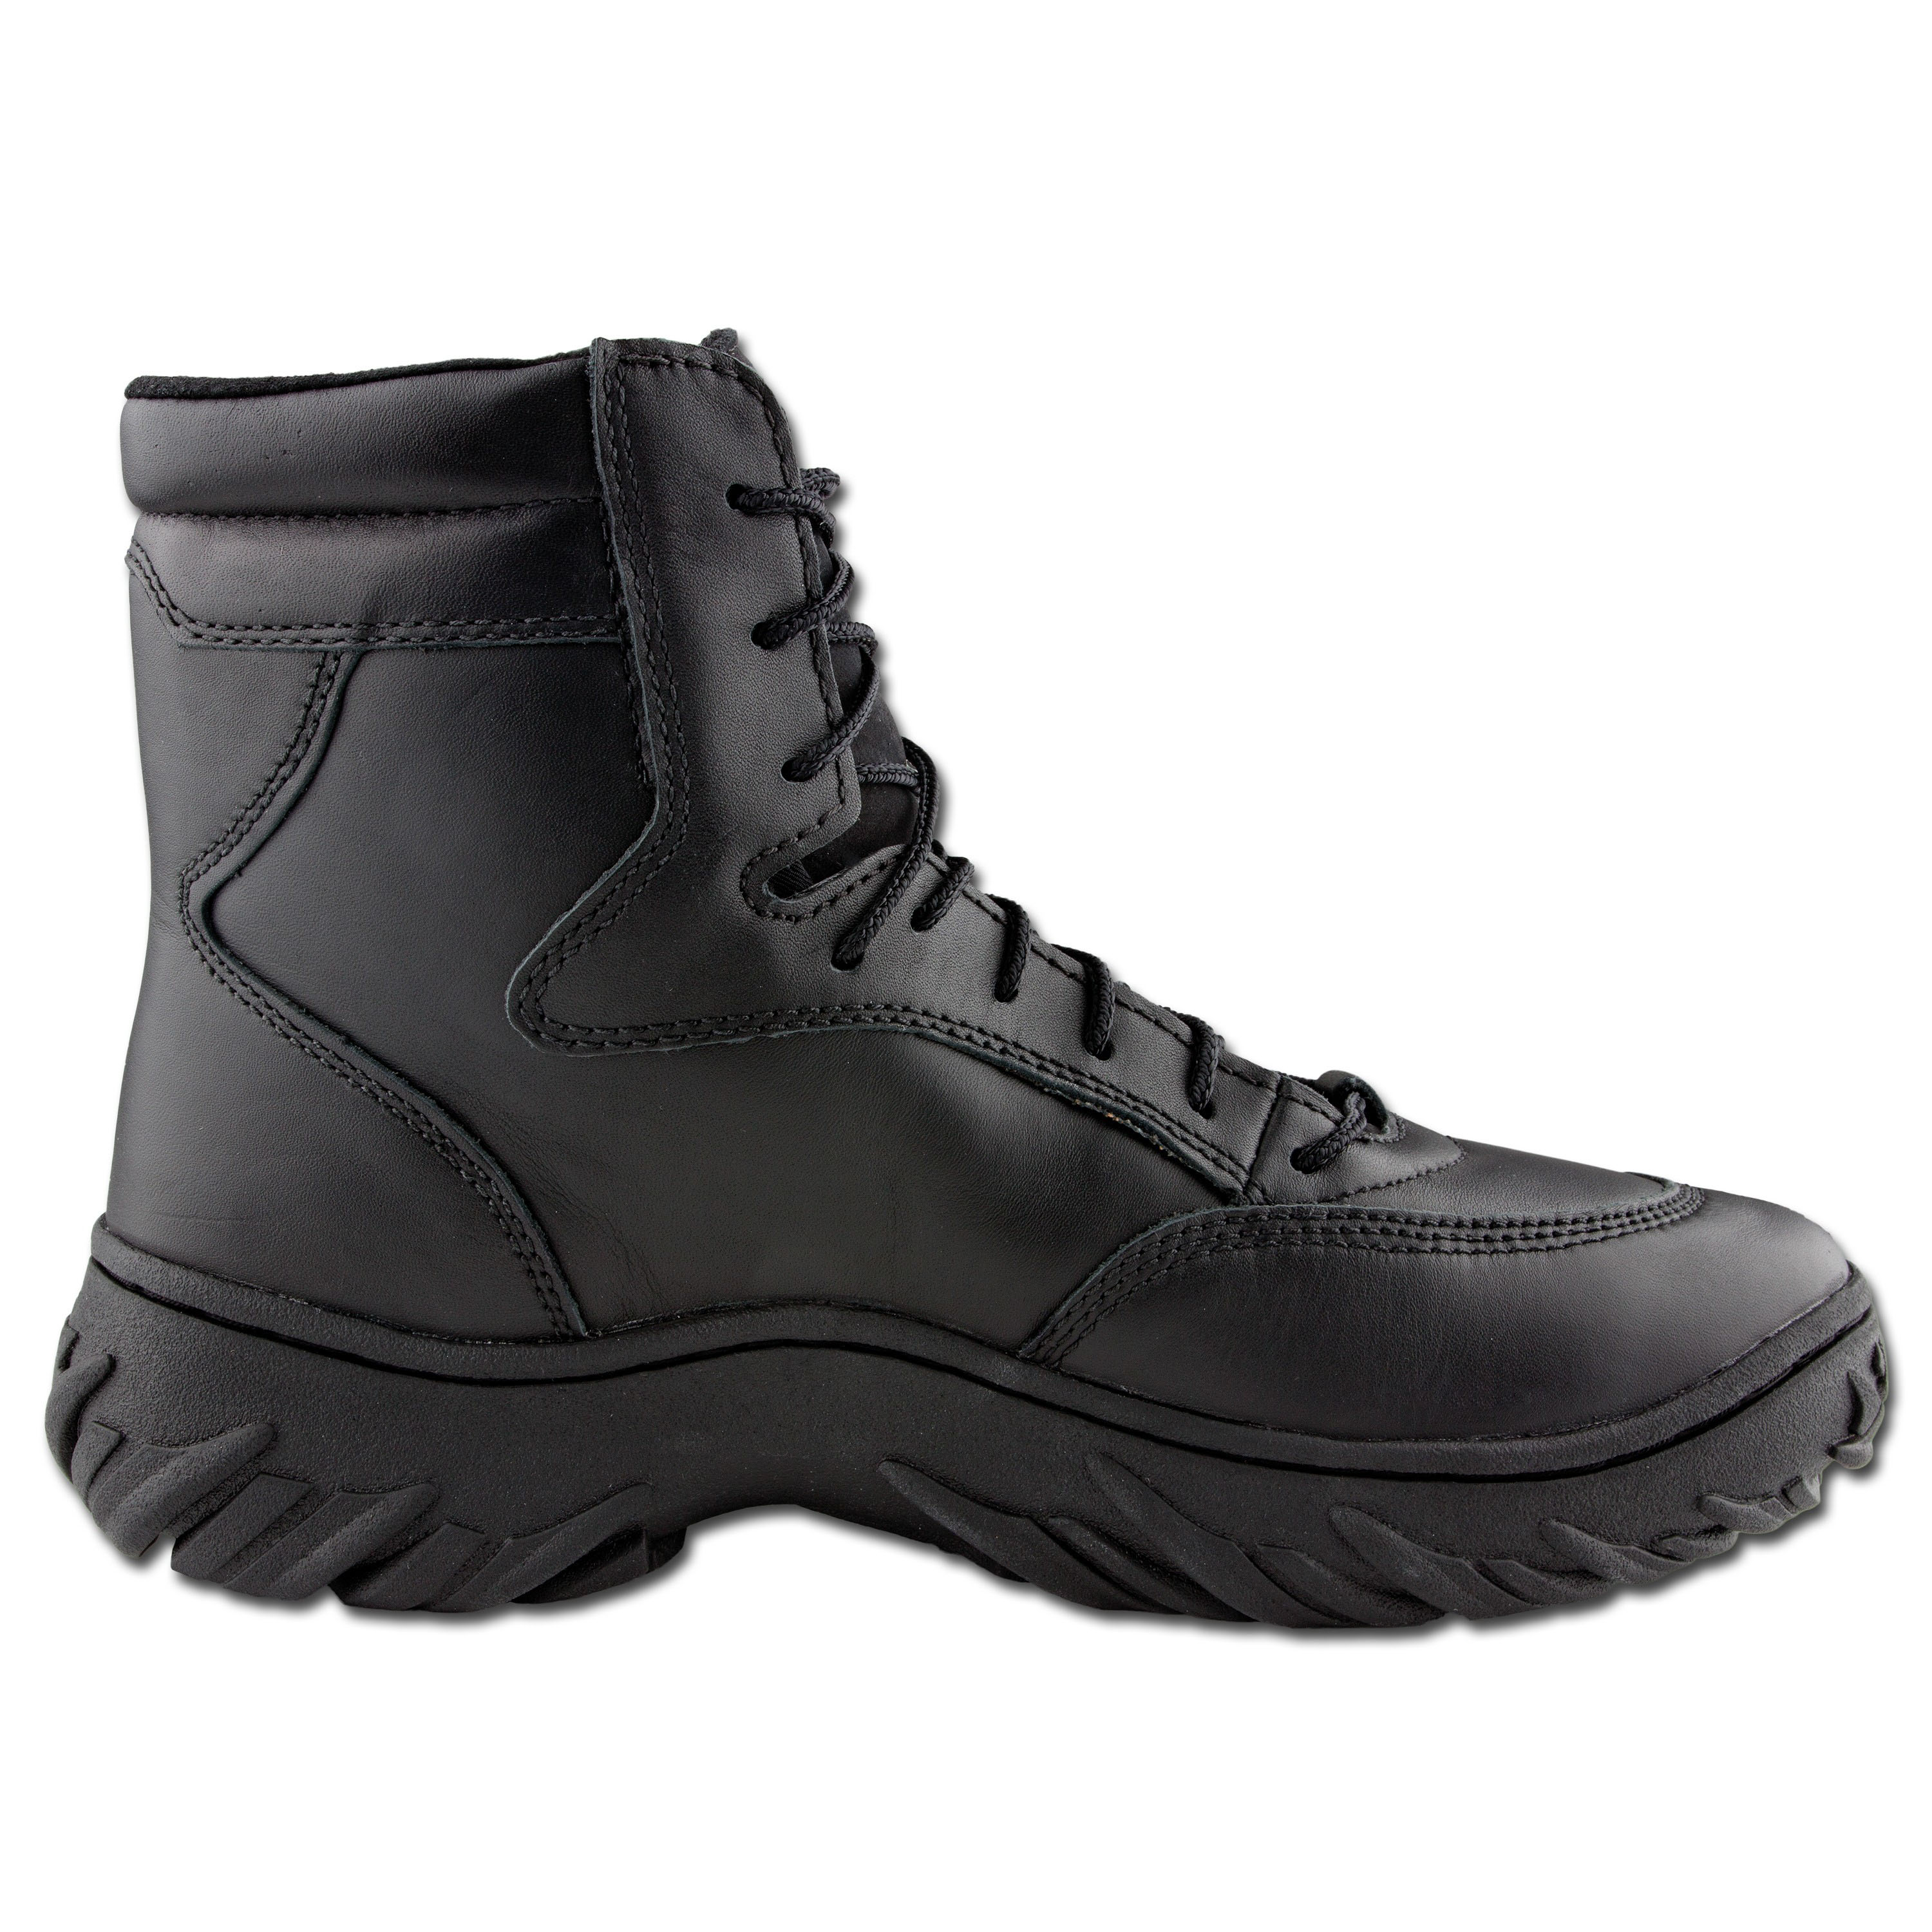 Boots Oakley S.I Assault | Boots Oakley S.I Assault | Combat Boots ...